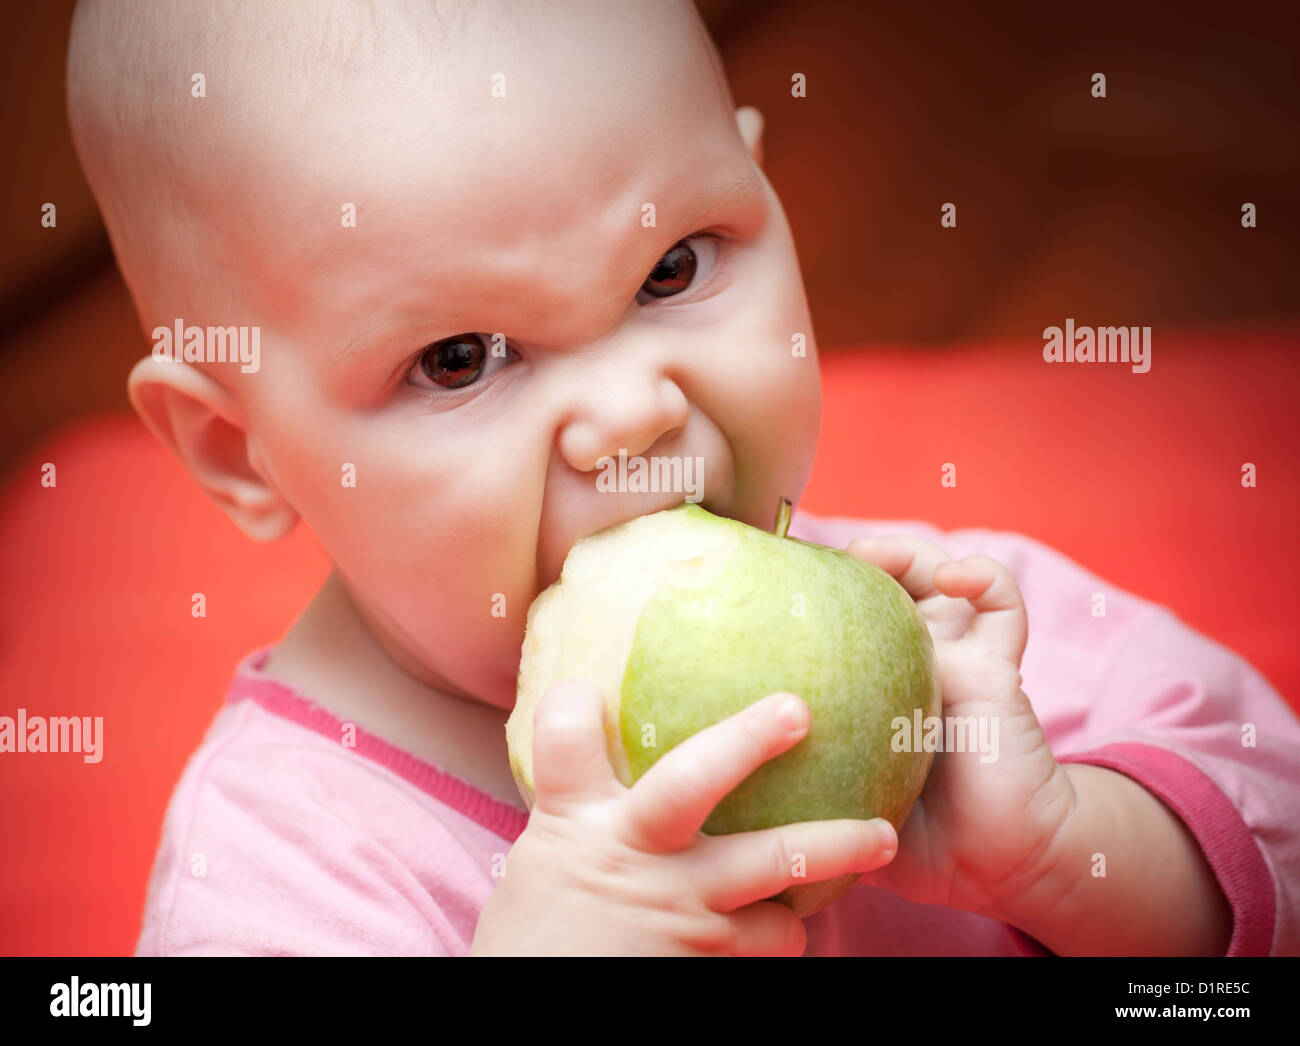 Drôle de petit bébé affamé dans un dossier rose vert pomme juteuse mange avidement Banque D'Images